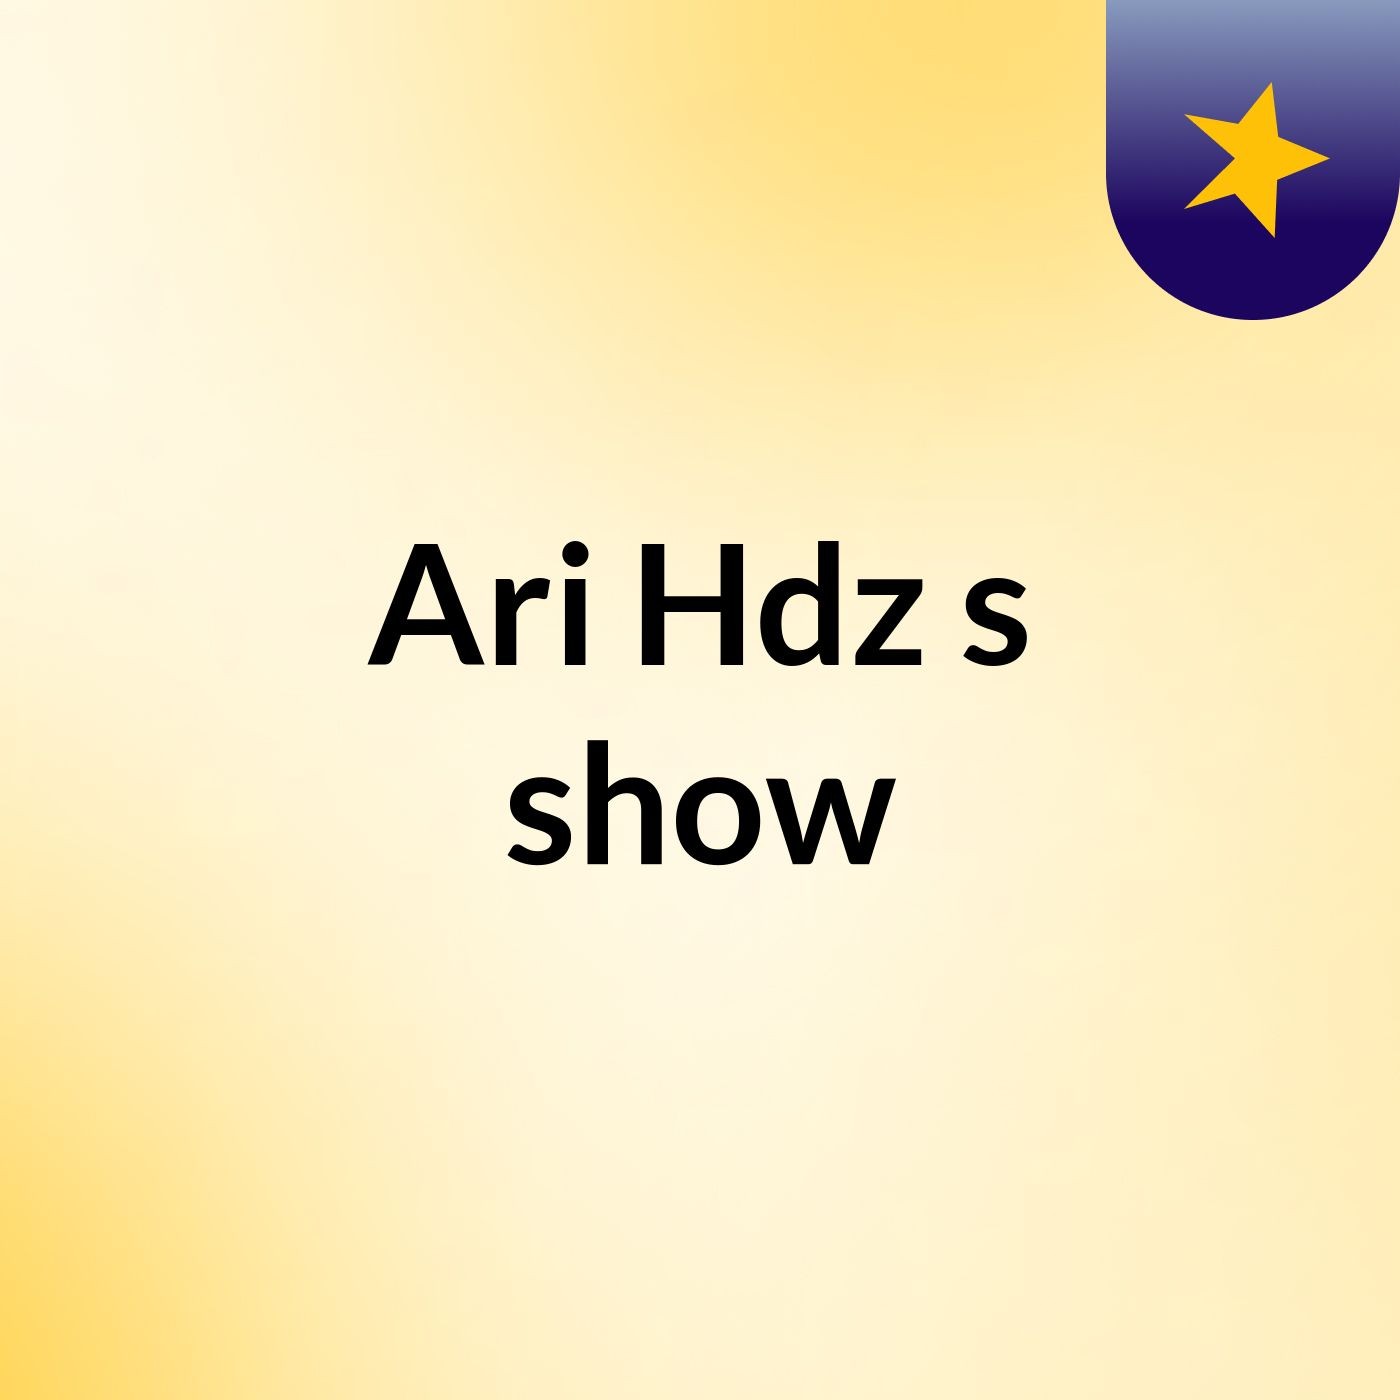 Ari Hdz's show